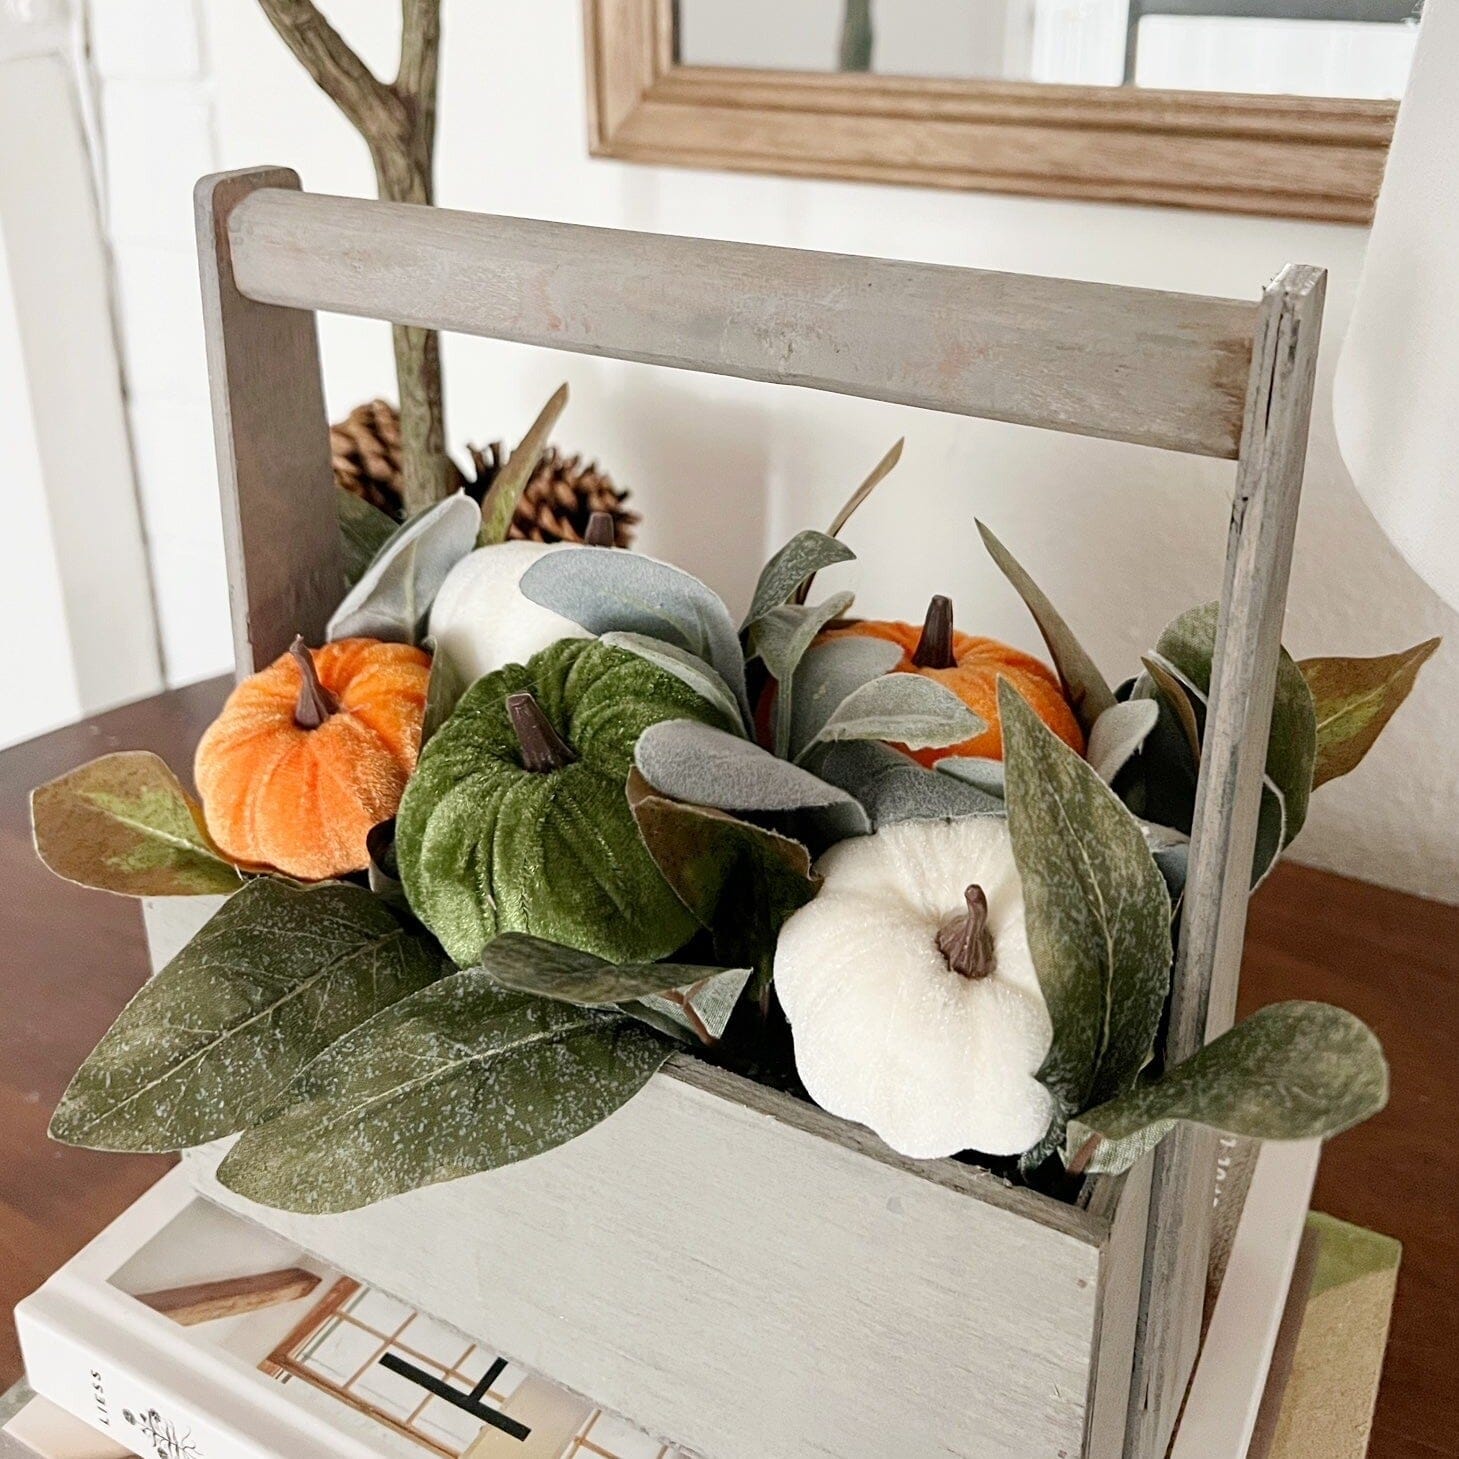 10” Fall Pumpkin Artificial Autumn Arrangement in Wood Basket